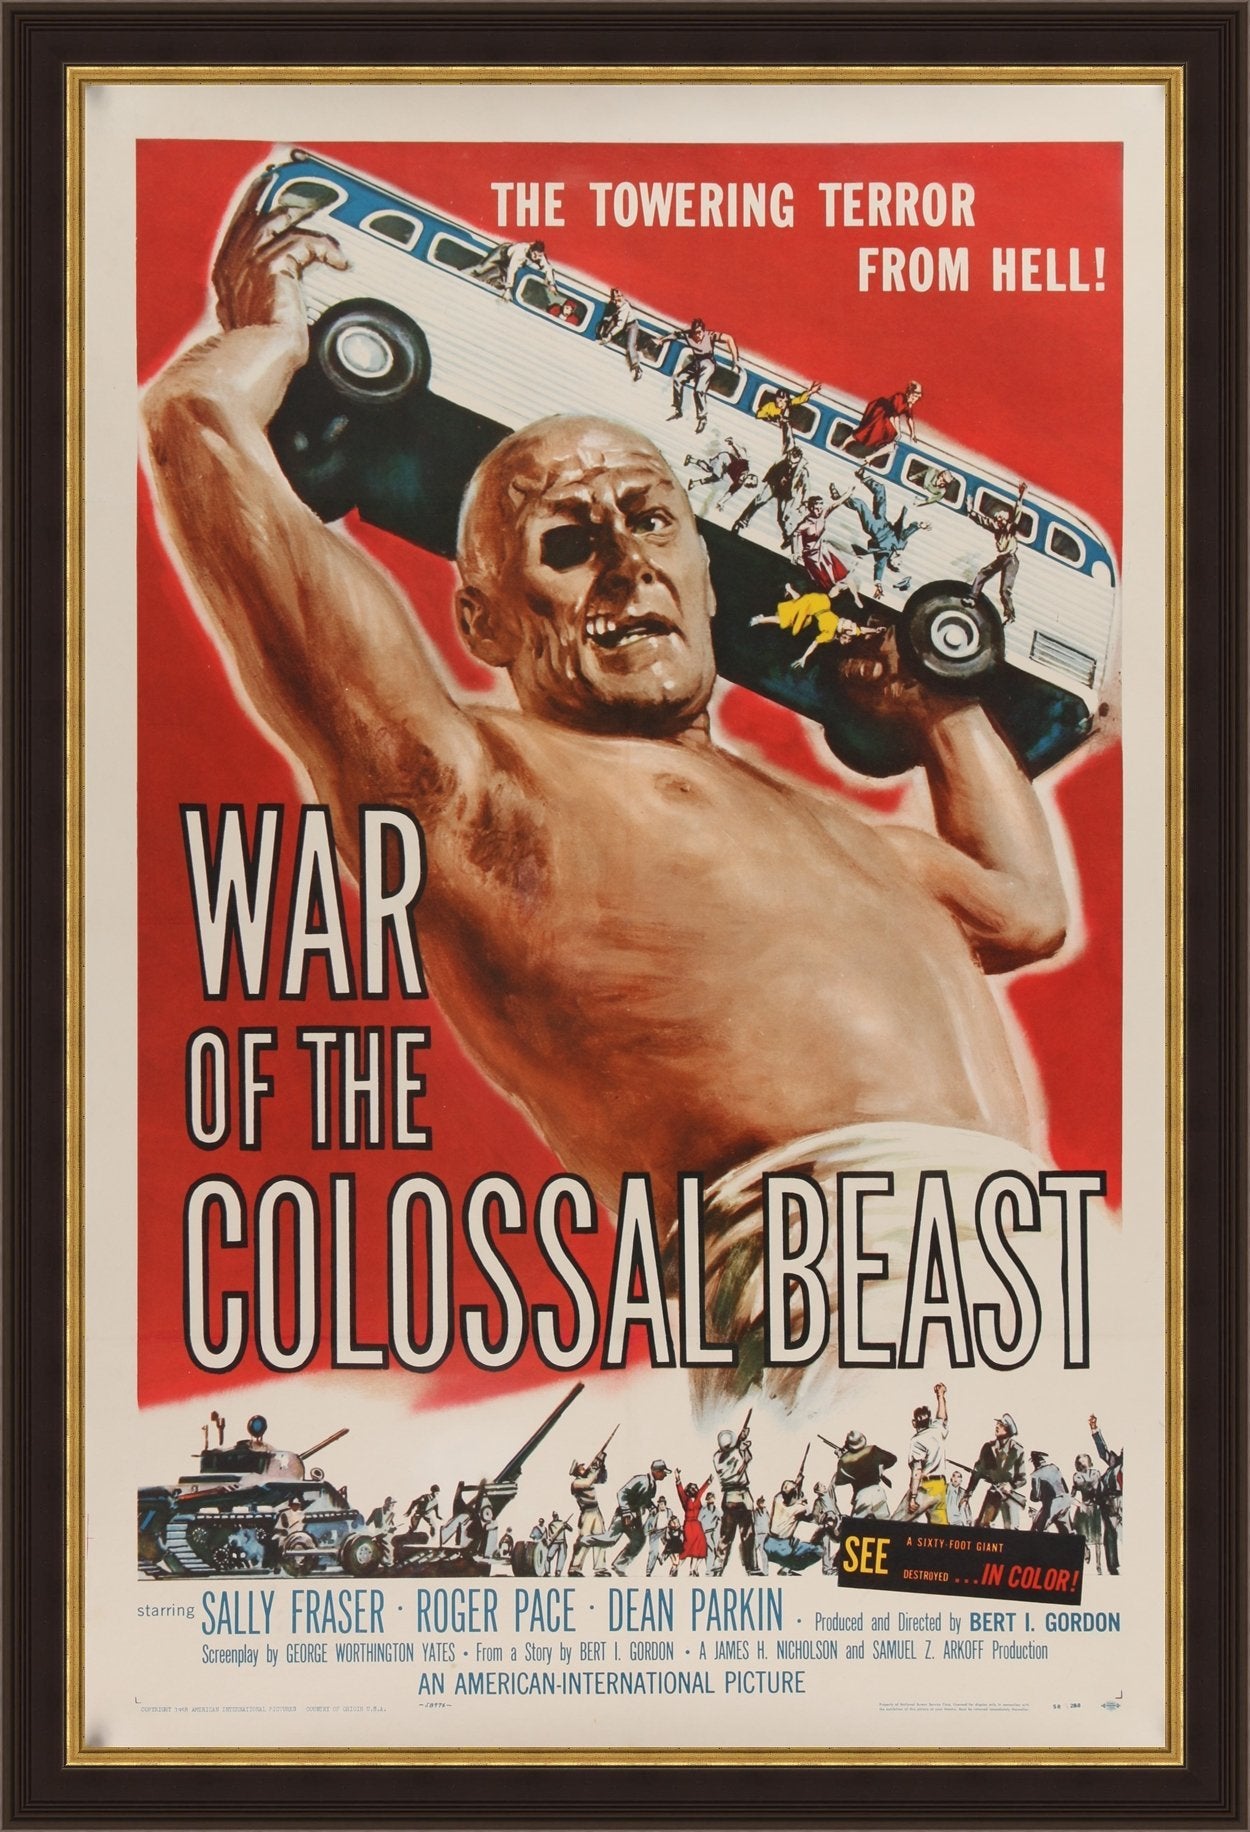 An original movie poster for War of the Colossal Beast by Albert Kallis